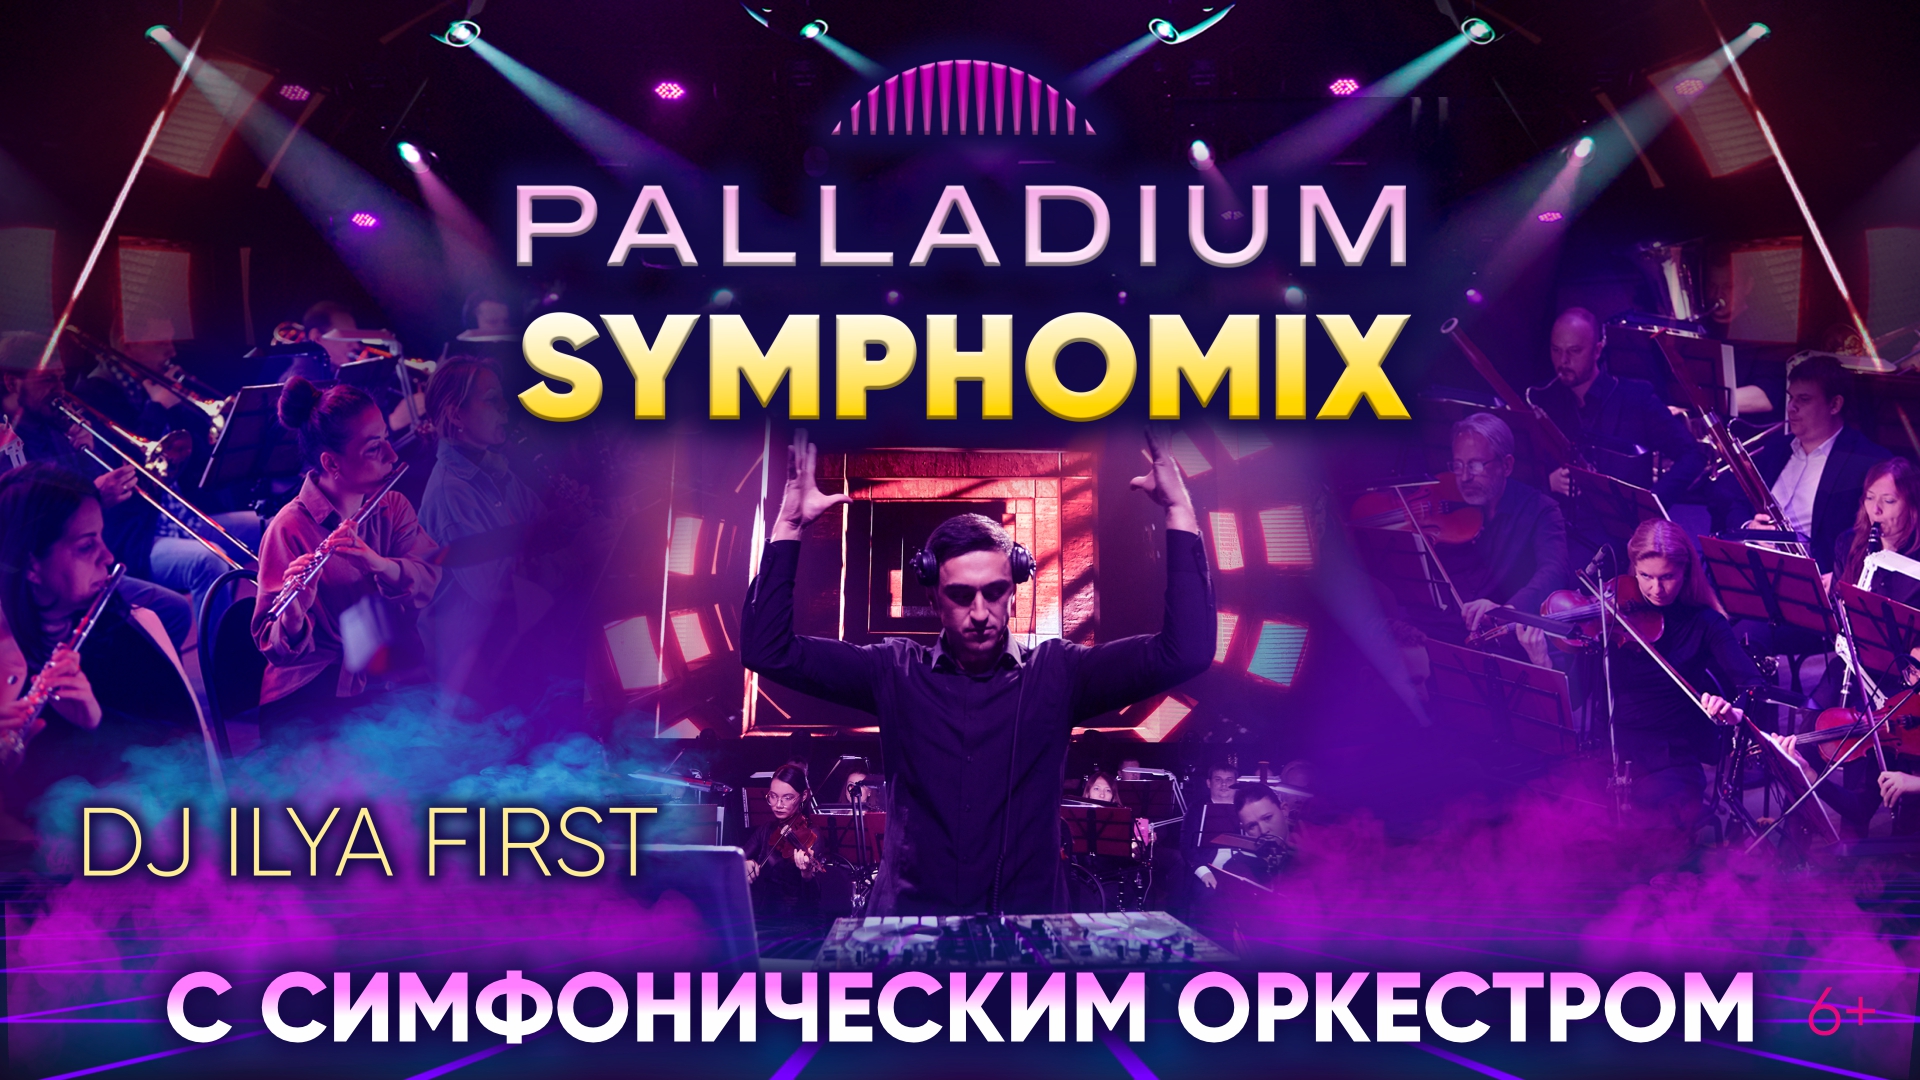 PALLADIUM SYMPHOMIX - симфонический оркестр и DJ FIRST